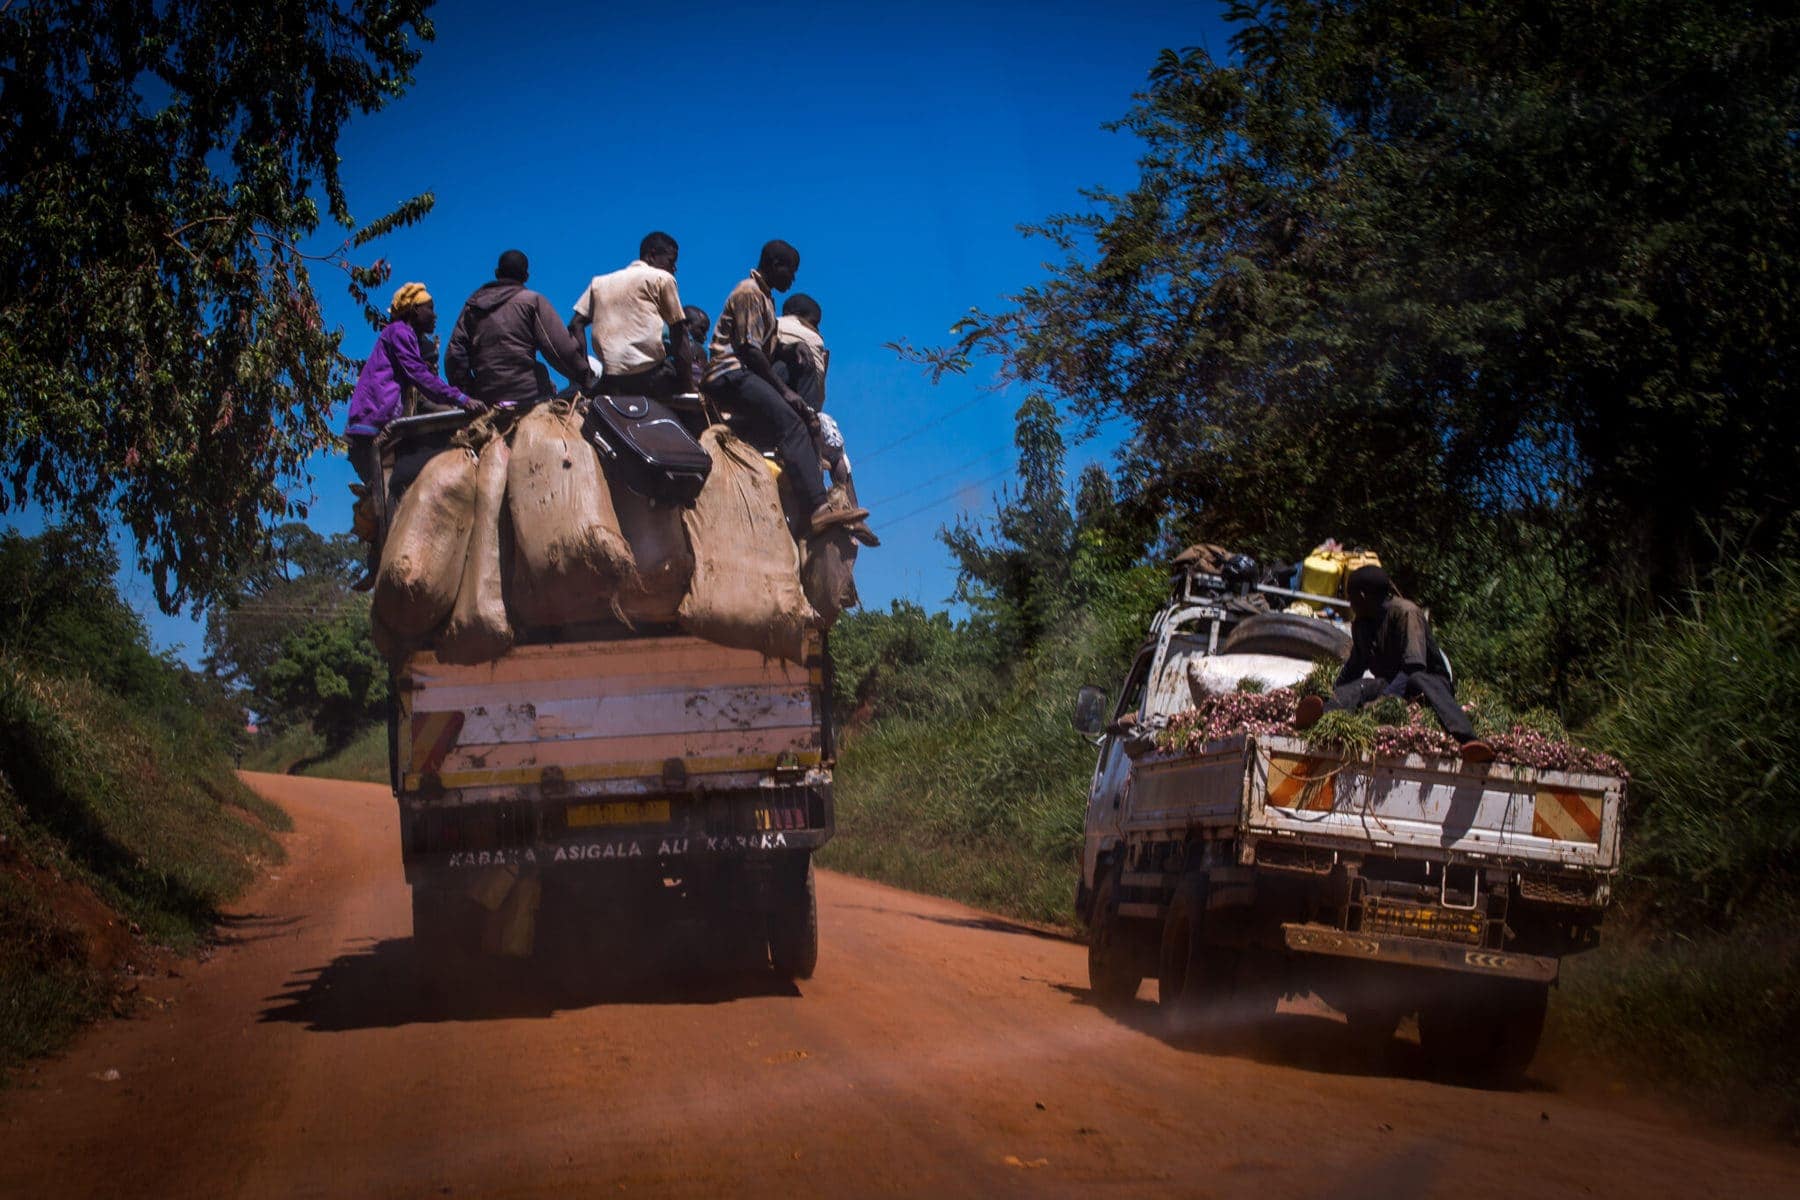 Doprava v Ugandě je nebezpečná. Na obrázku předjíždí přeplněný kamion menší kamion na prašné úzké cestě